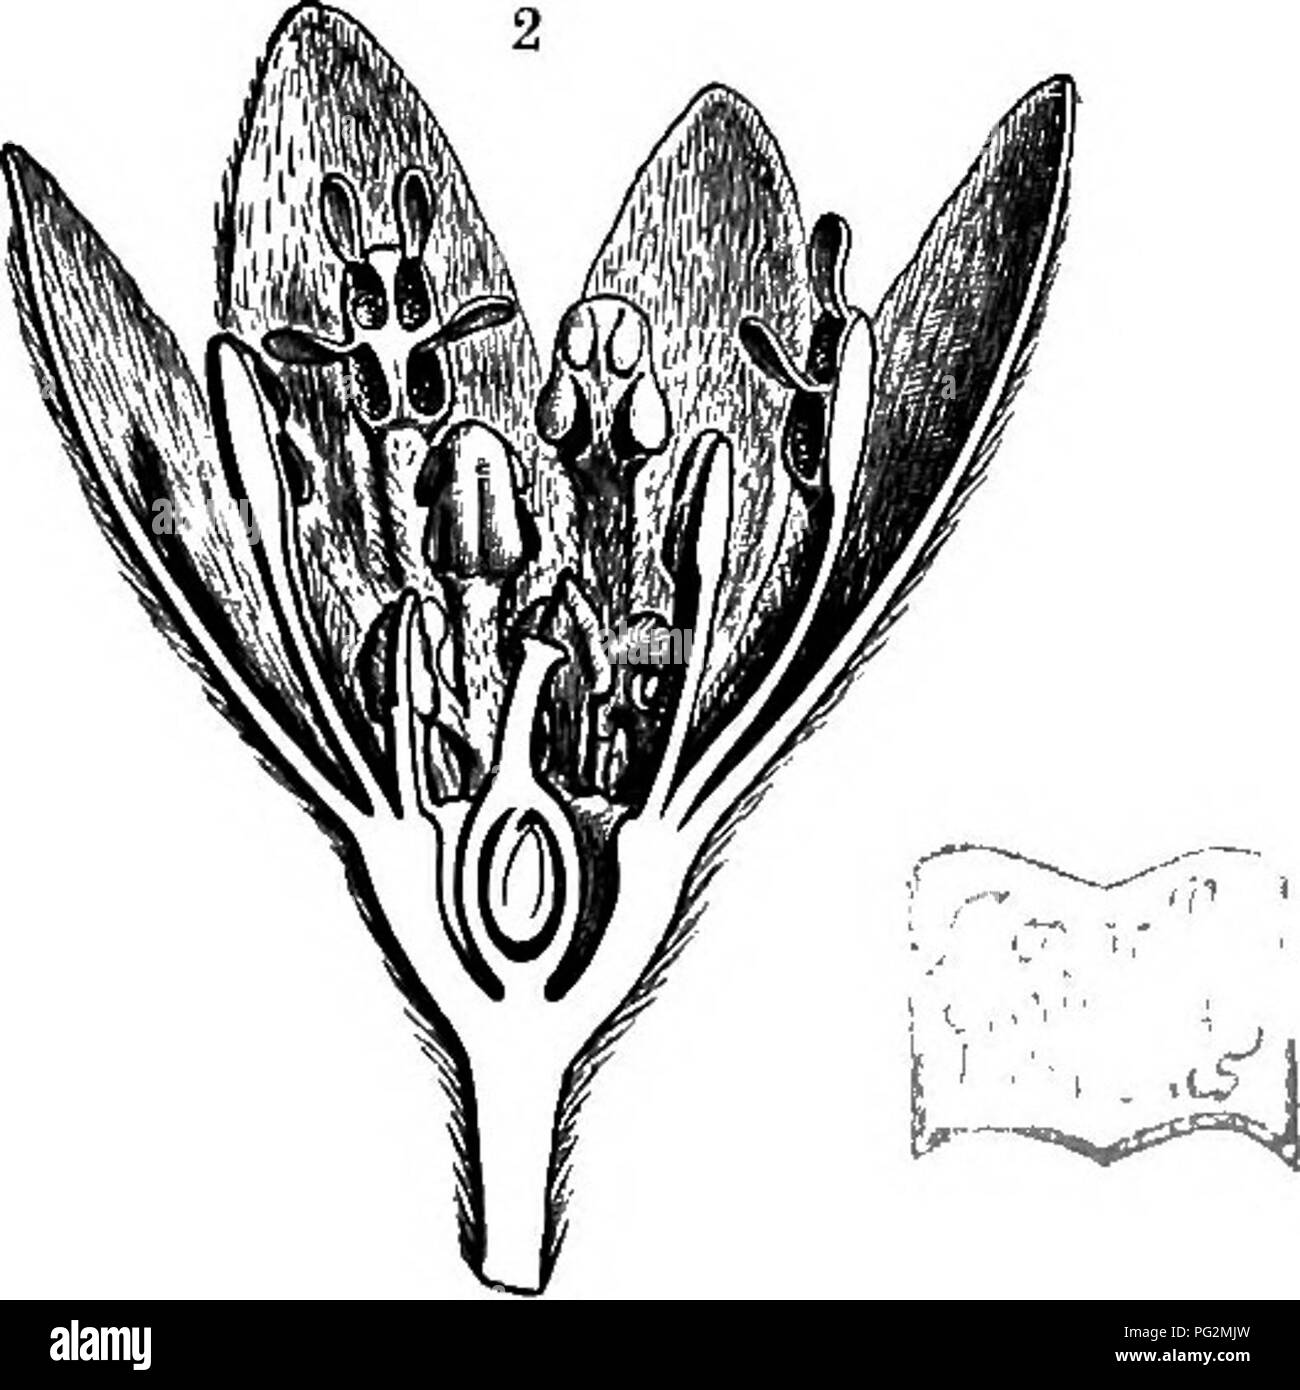 . La storia naturale delle piante, le loro forme, la crescita, la riproduzione e la distribuzione;. La botanica. Kg. 427.-Daphnales. Ho Camjphora ojicinarum (Famiglia Lauraceas), filiale di fioritura. 2 una sezione longitudinale attraverso il fiore di Cmntmifynvum Zeytanicum (Famiglia Lauraceee). 3 Fiore di Daphne Mezerewm (Famiglia Thymelacese) tagliata aperta e il rollback • ridotto: 2 e s ingrandita. (Parzialmente dopo Baillon.) esterno e forte all'interno, il risultato è una falsa drupa. In alcuni Lauracese anche come, per esempio, in Nectandra, il ricettacolo continua a crescere con la frutta, e forma un contenitore a forma di busta resembl Foto Stock